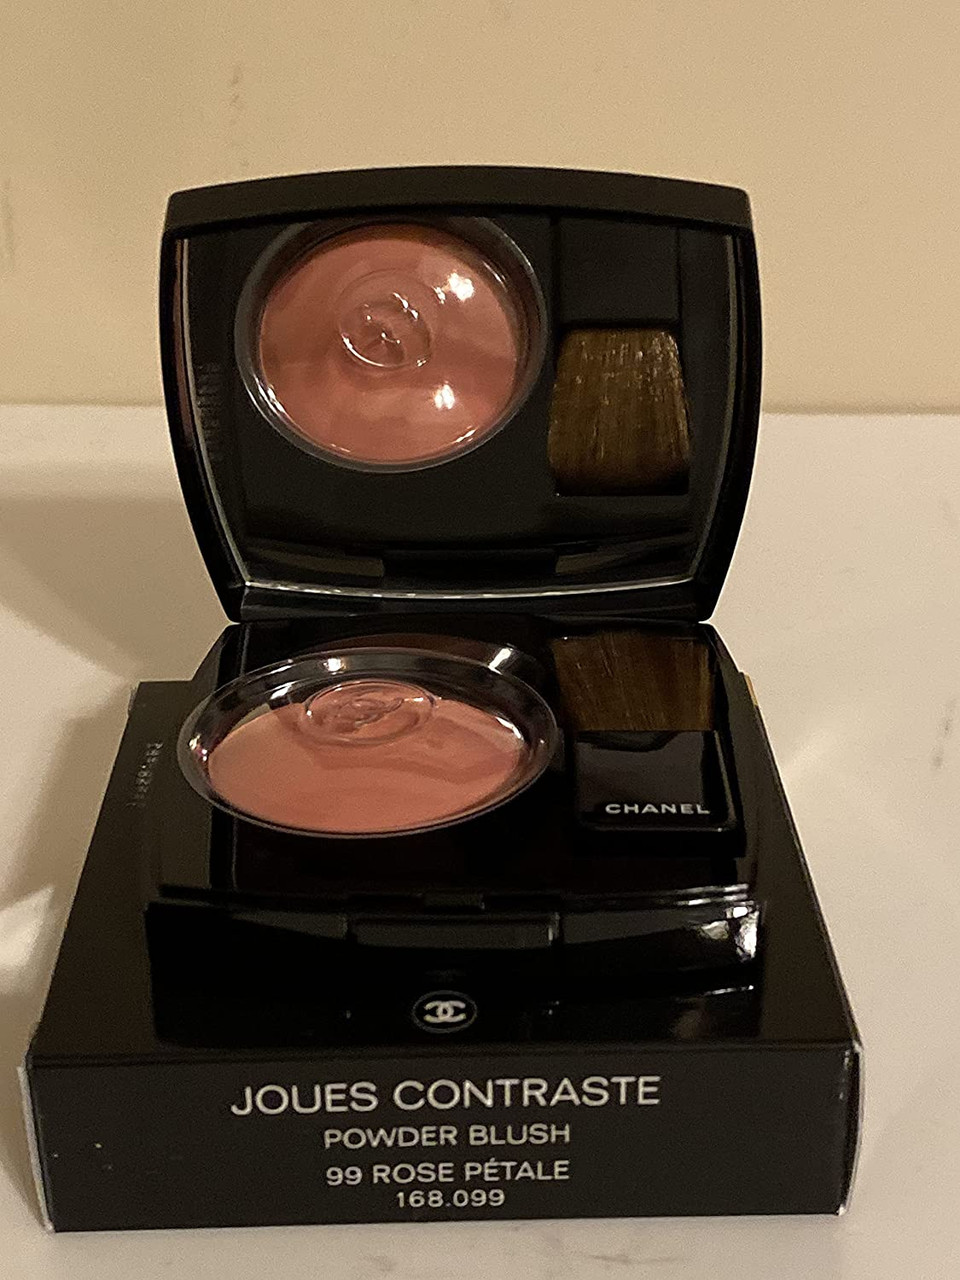 Chanel Joues Contraste Powder Blush - Quintessence